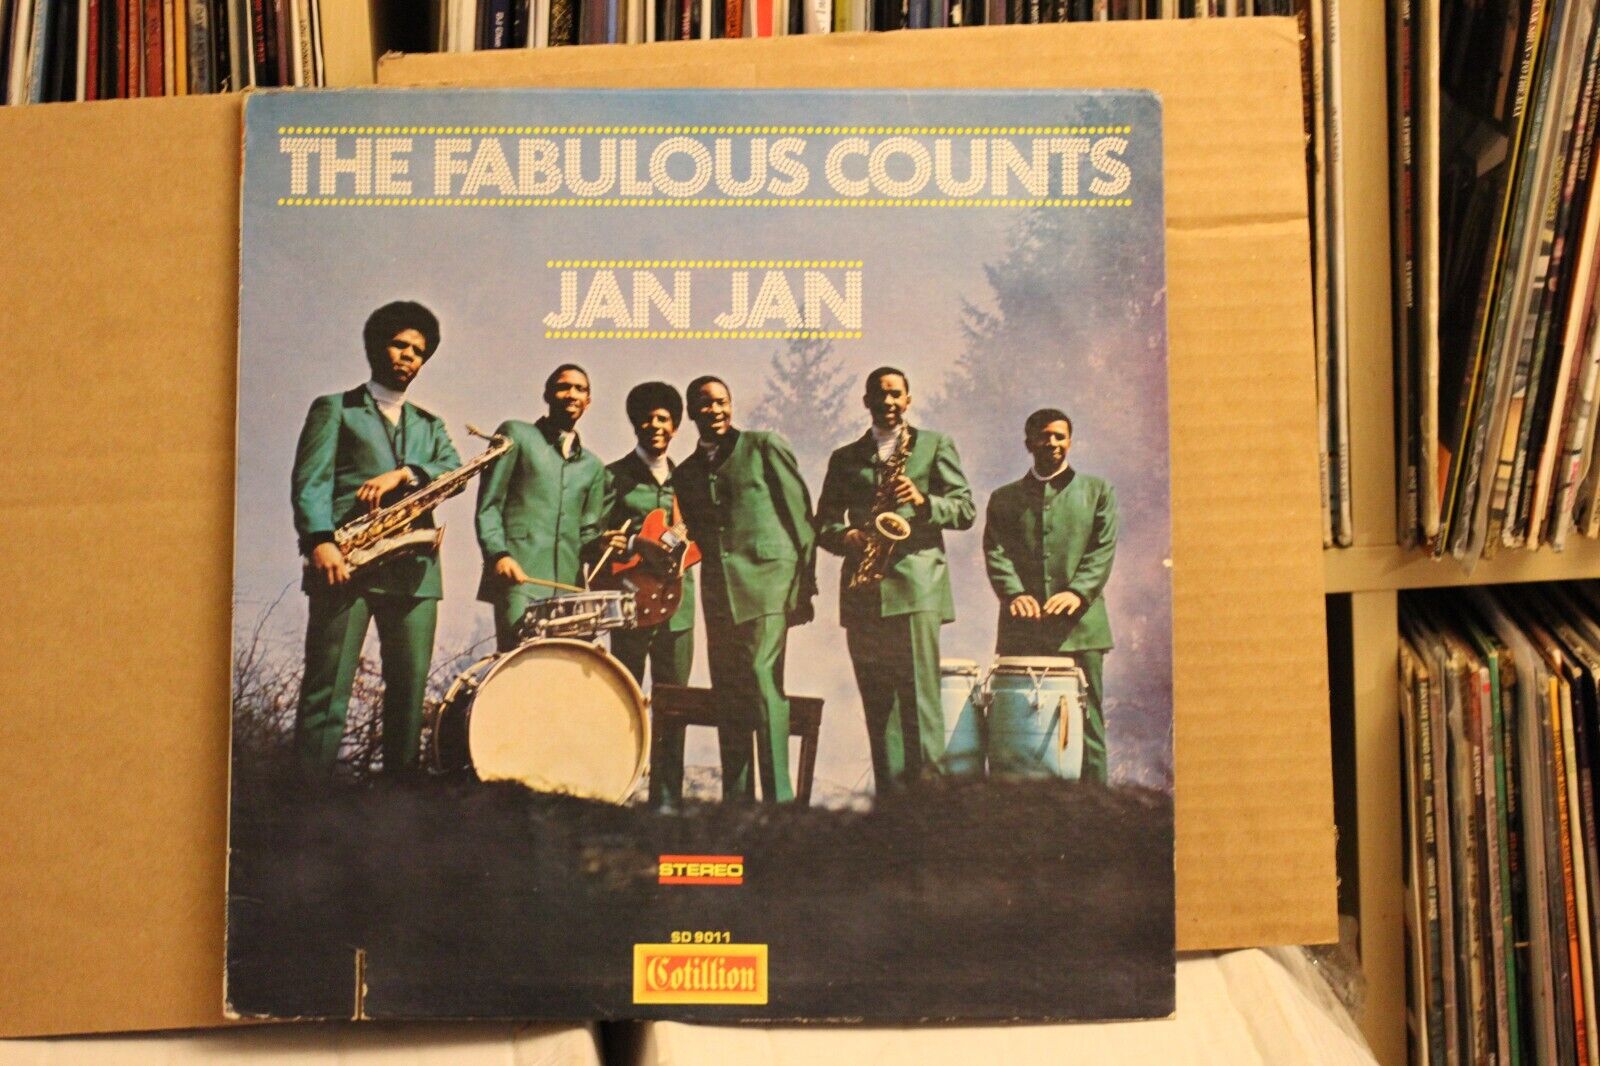 The Fabulous Counts Jan Jan 1969 instrumental funk LP on Cotillion